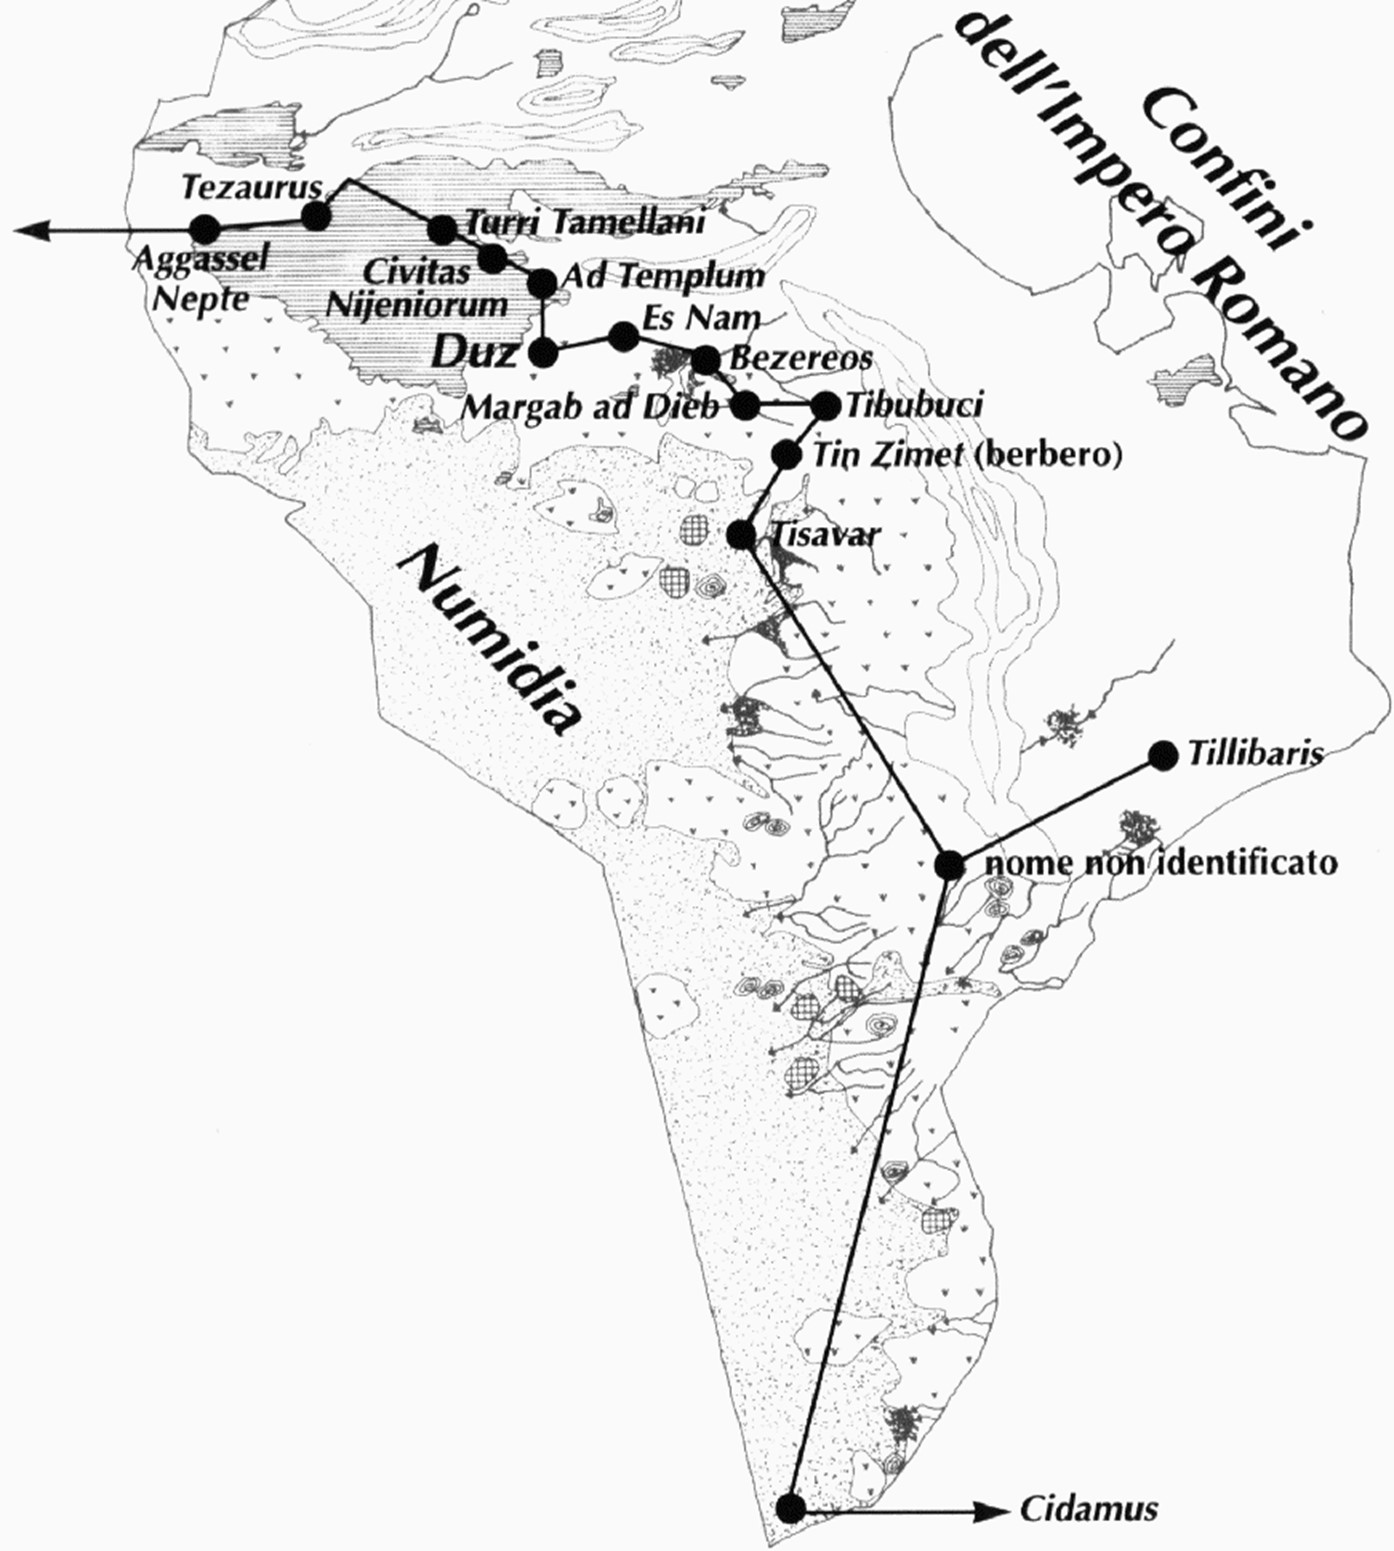 Plan des fortifications et des avant-postes romains en Tunisie (Limes Tripolitanus)